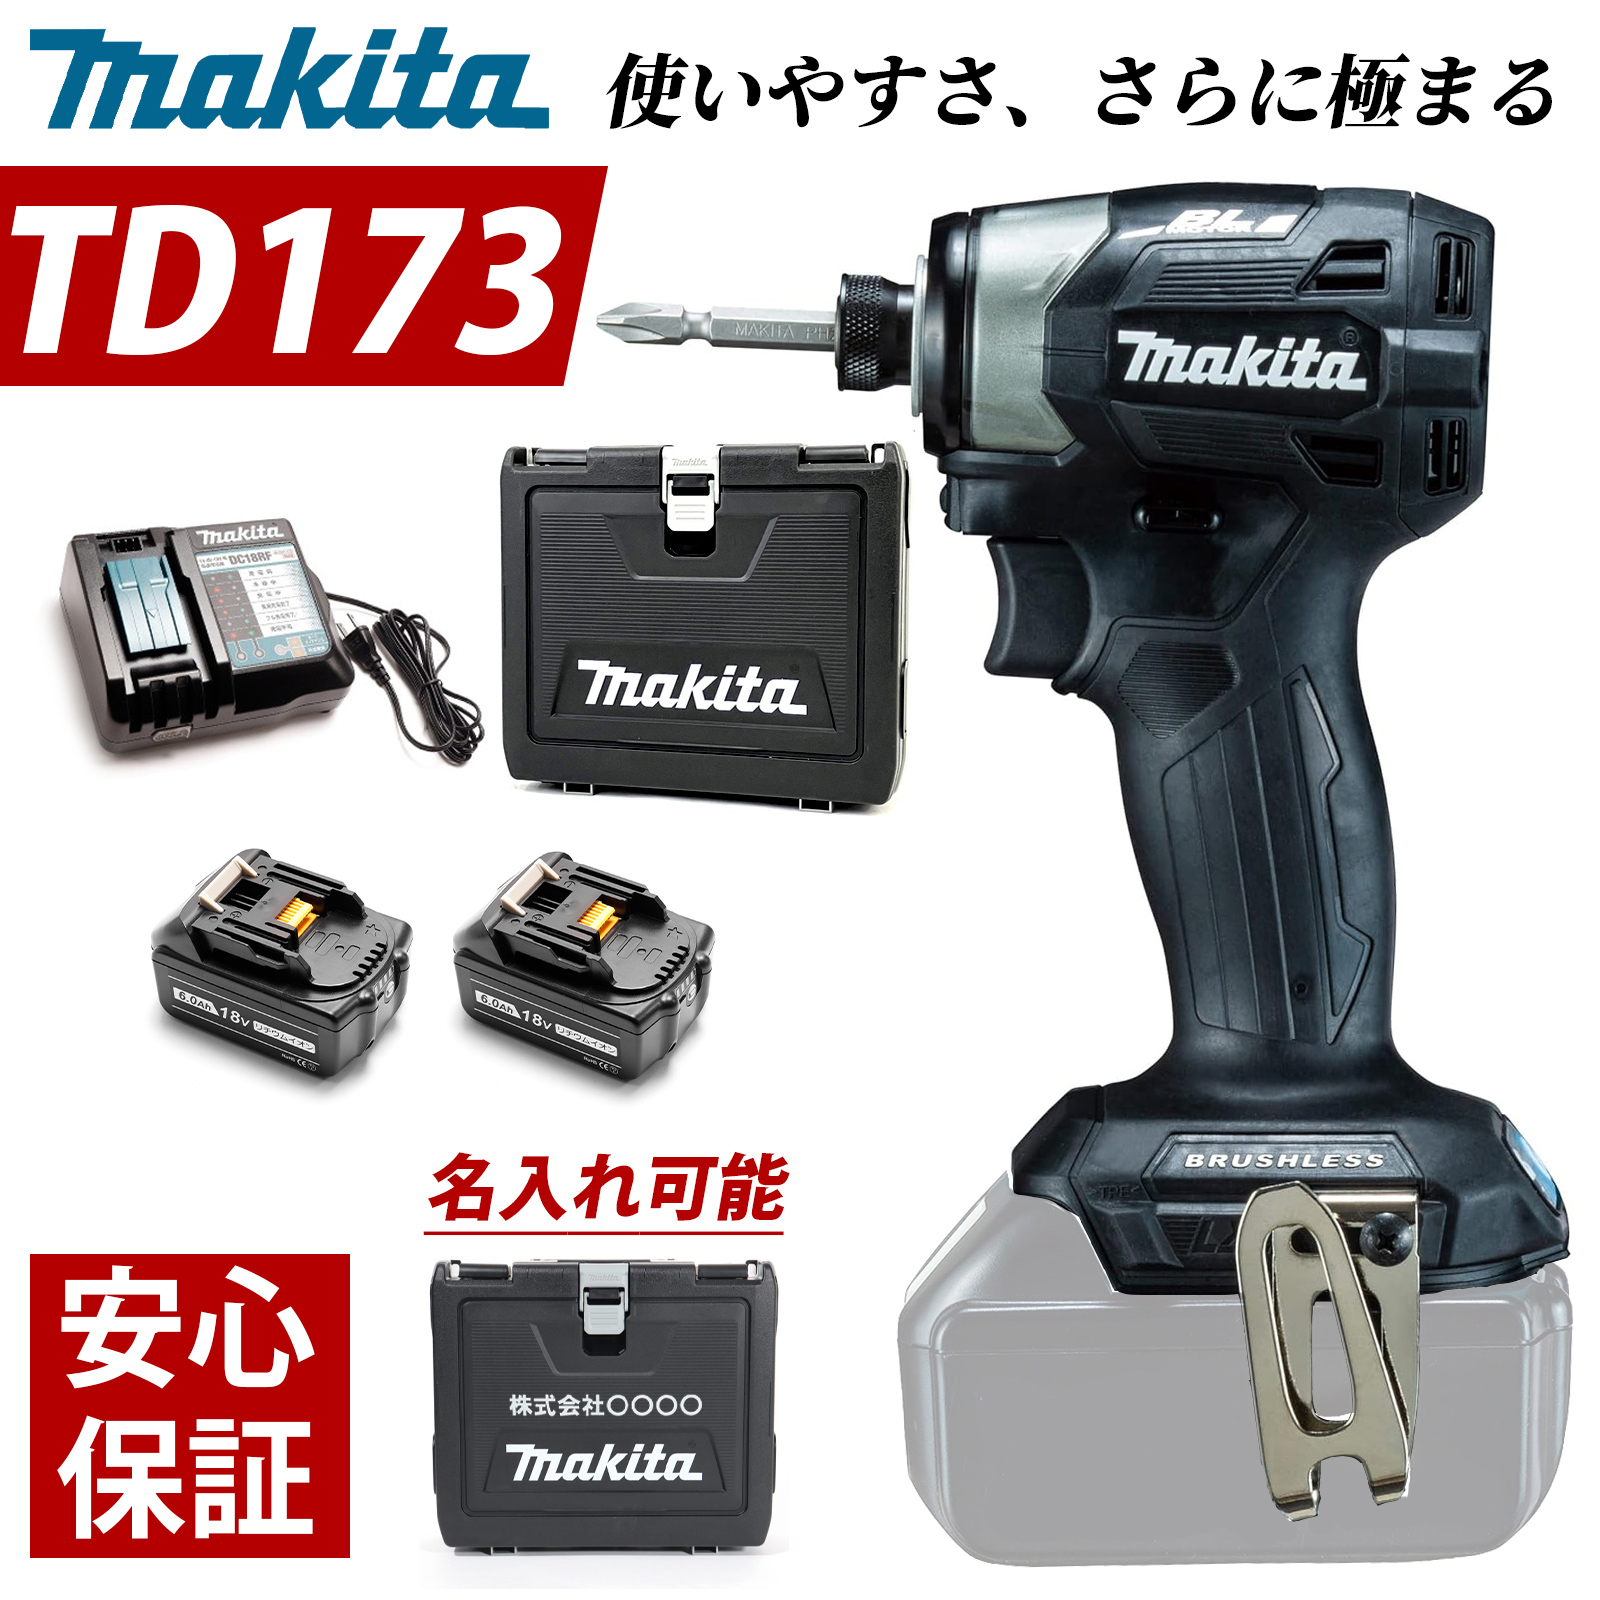 マキタ インパクトドライバー 18V TD173DRGX フルセット MAKITA TD172 後継...